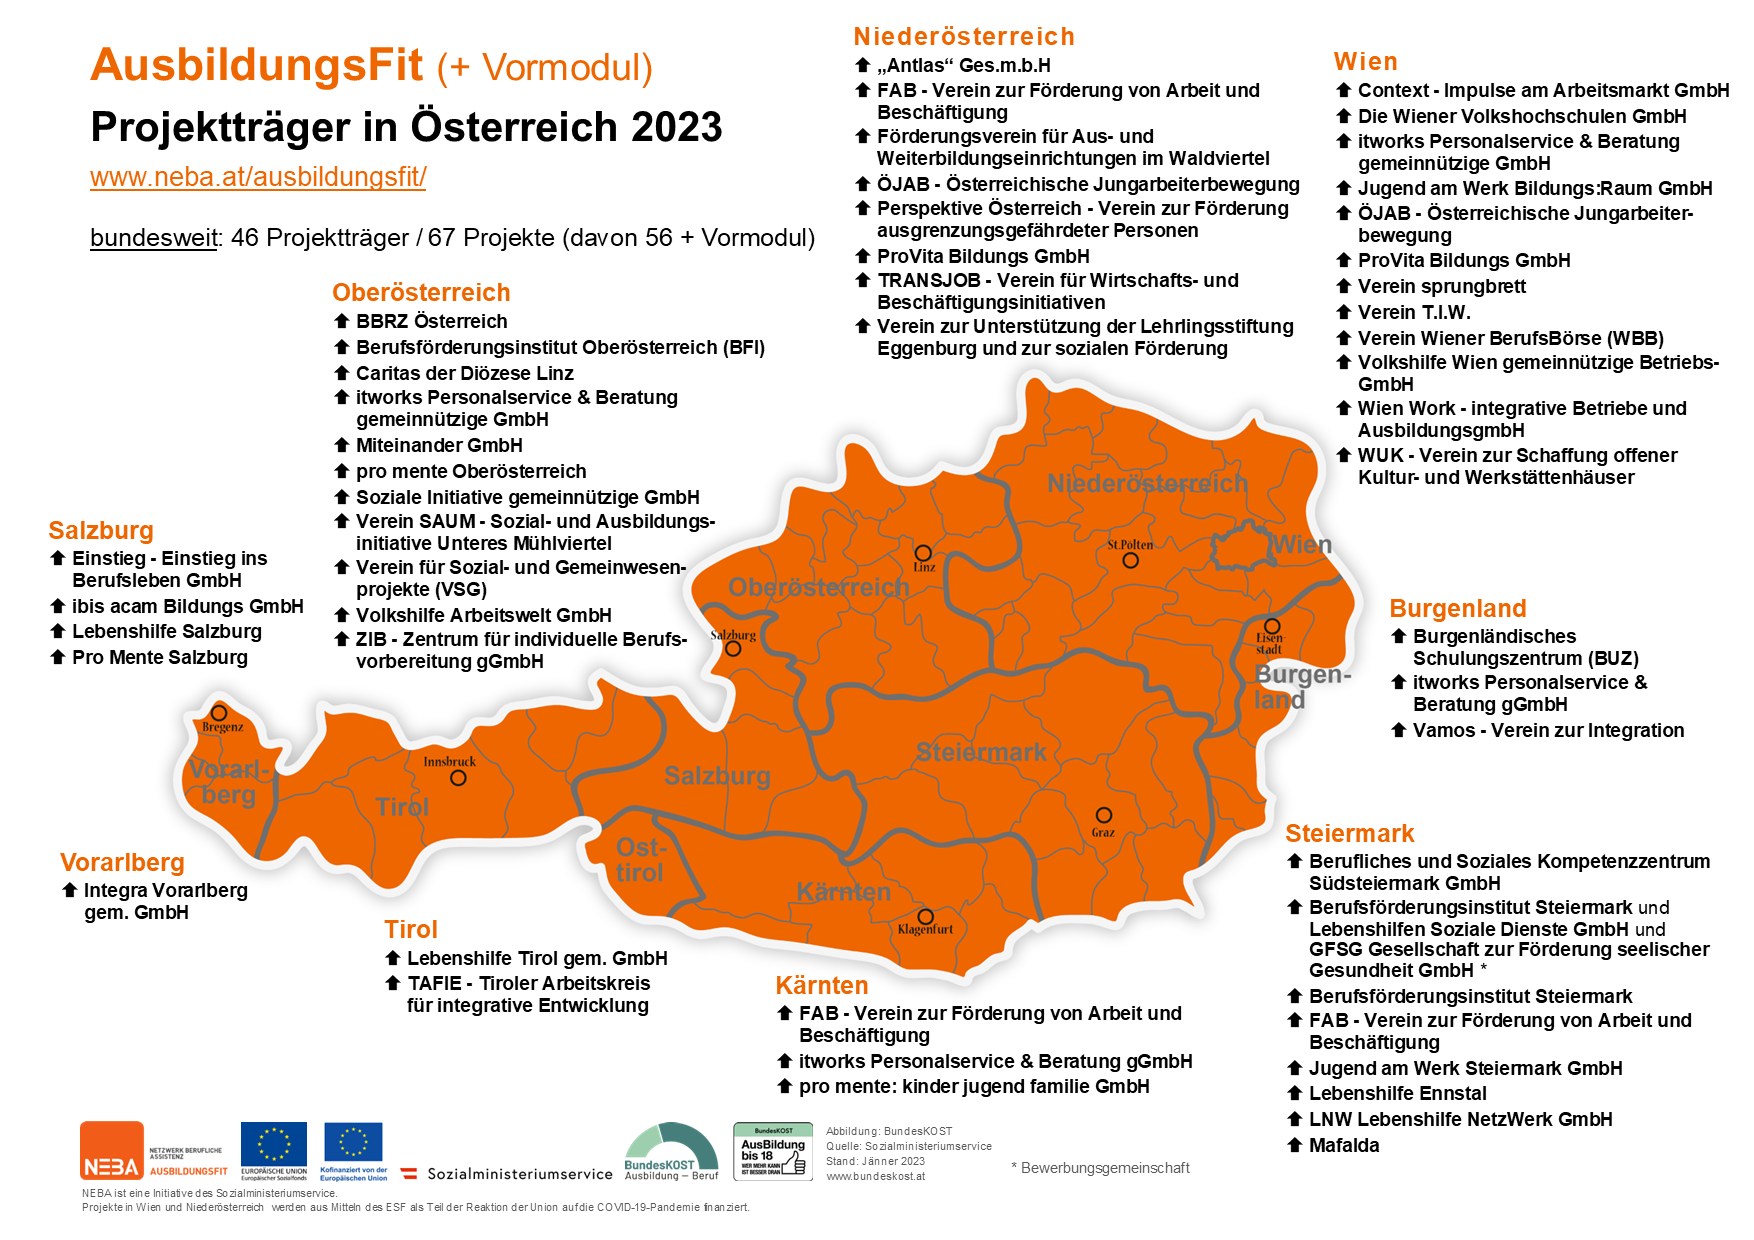 Karte von Österreich mit AusbildungsFit Projekten